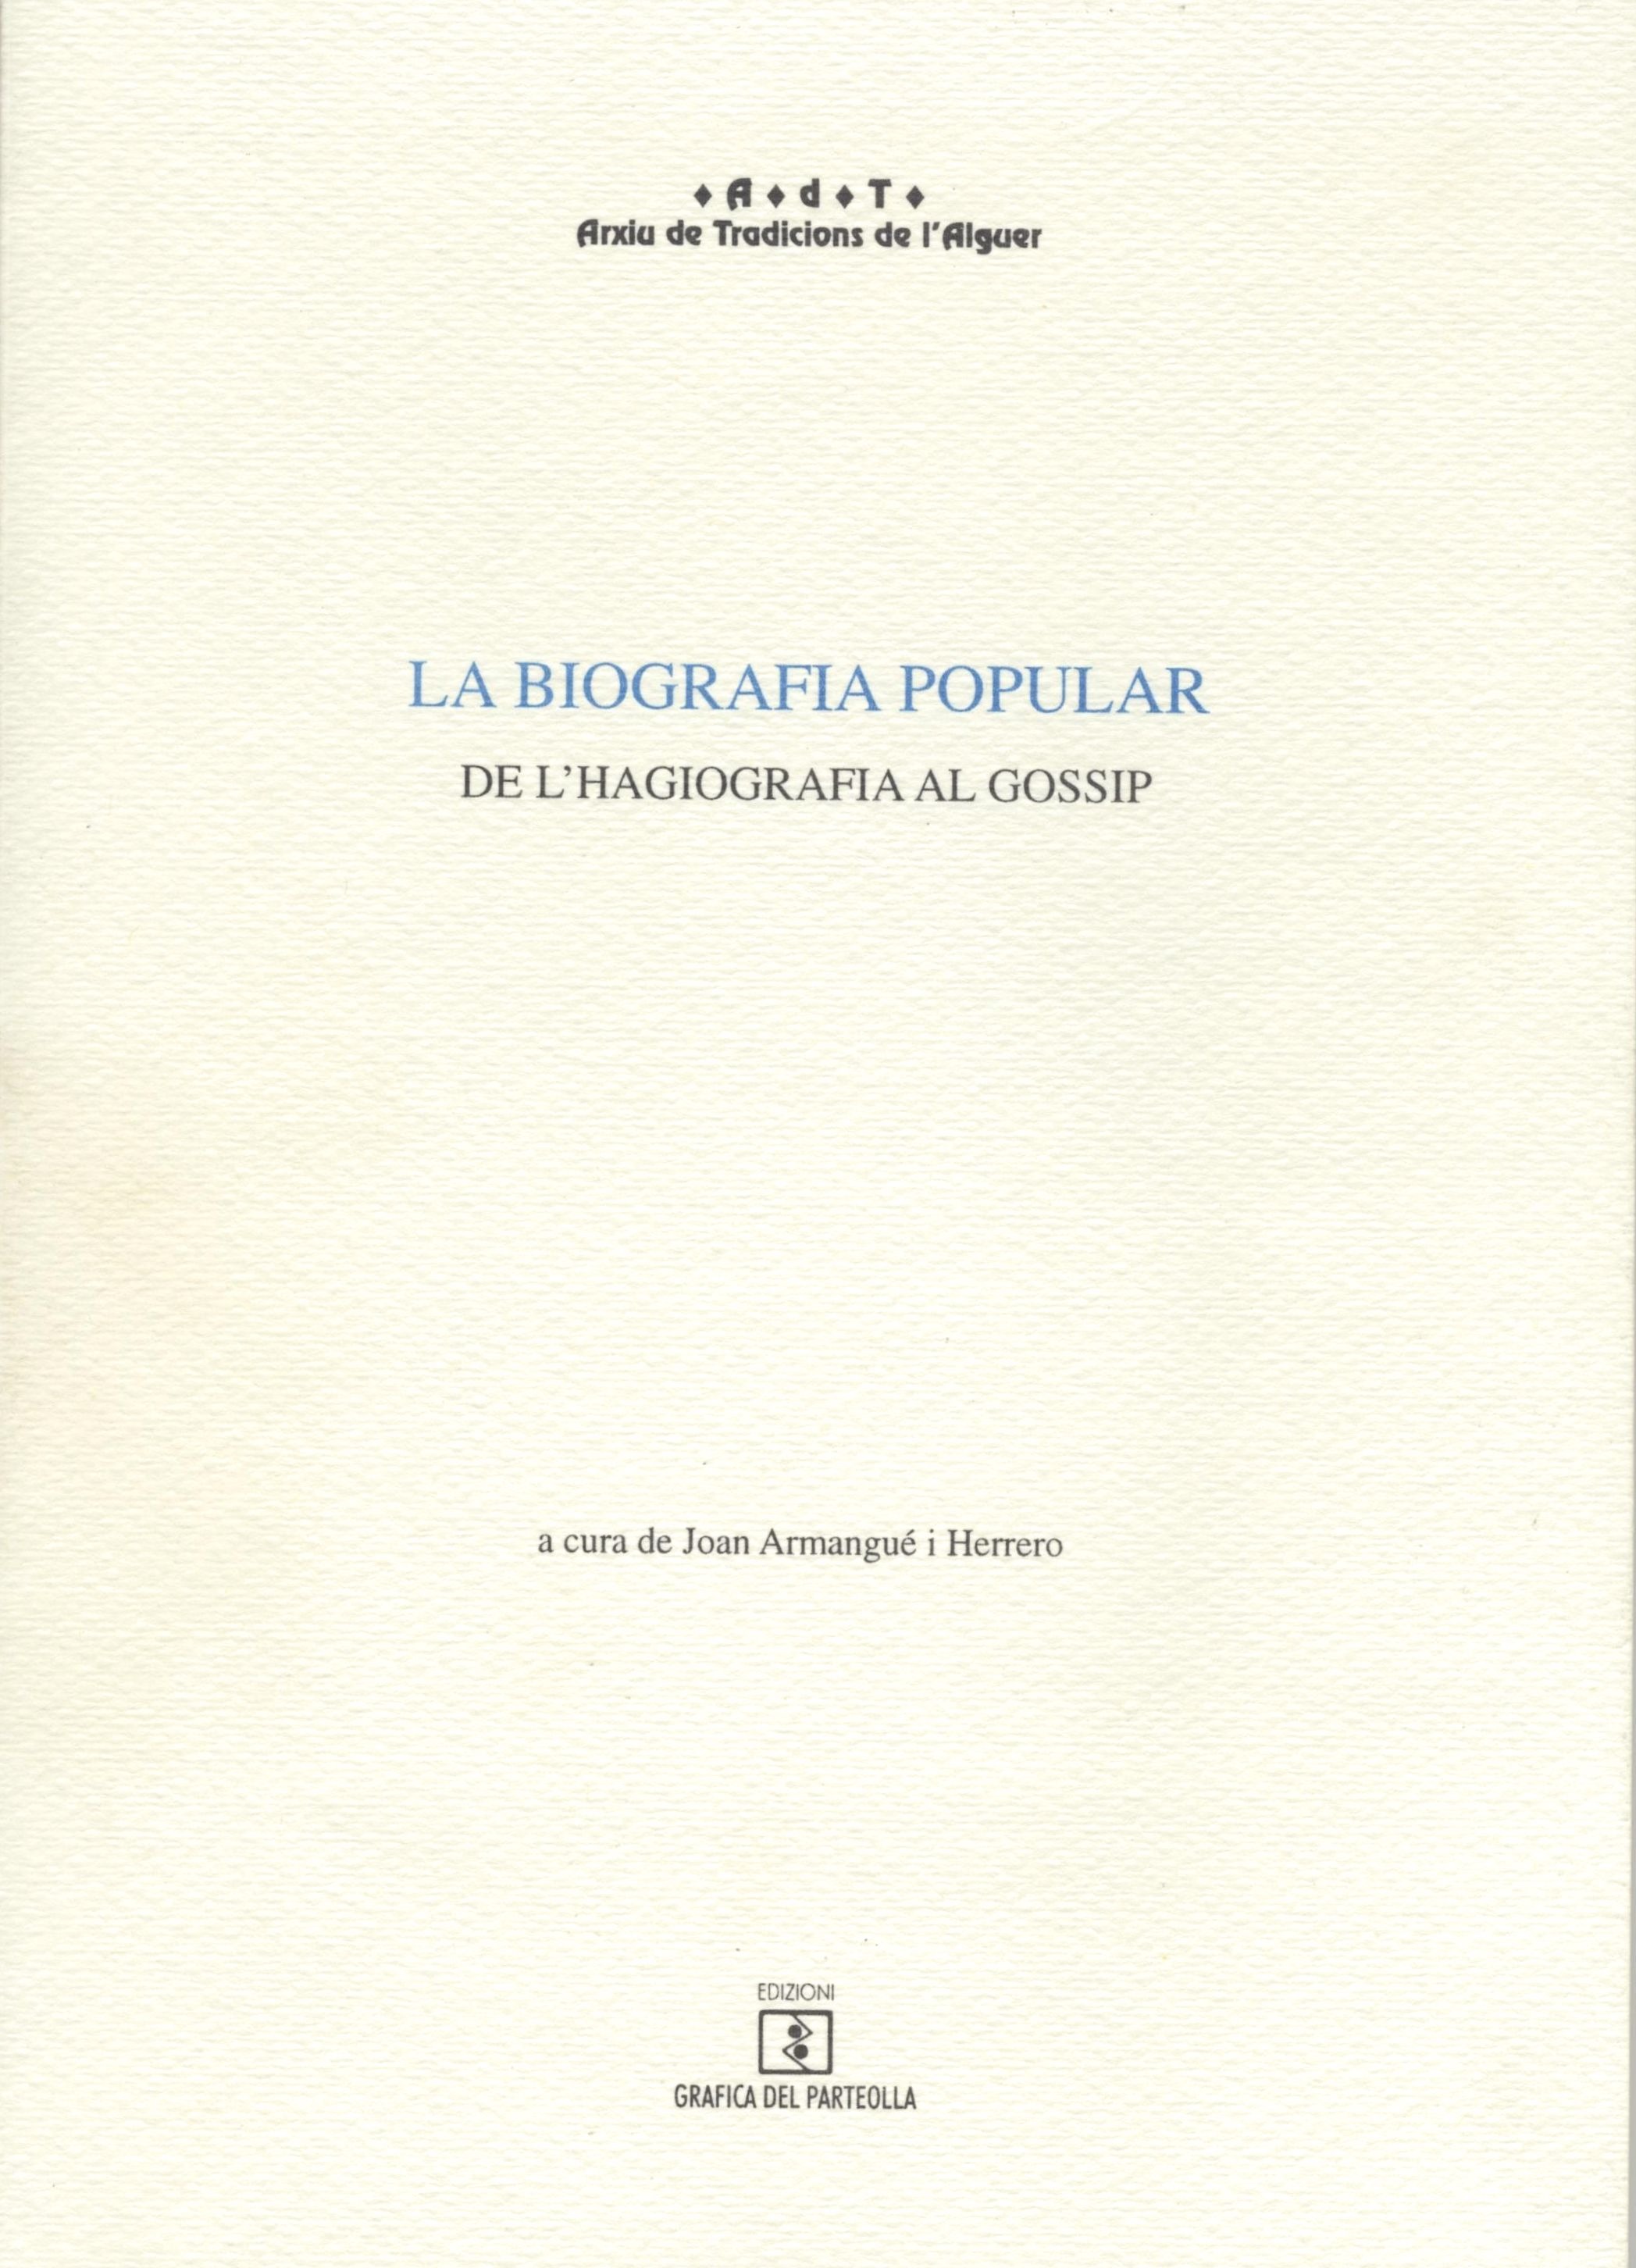 Imagen de portada del libro La biografia popular